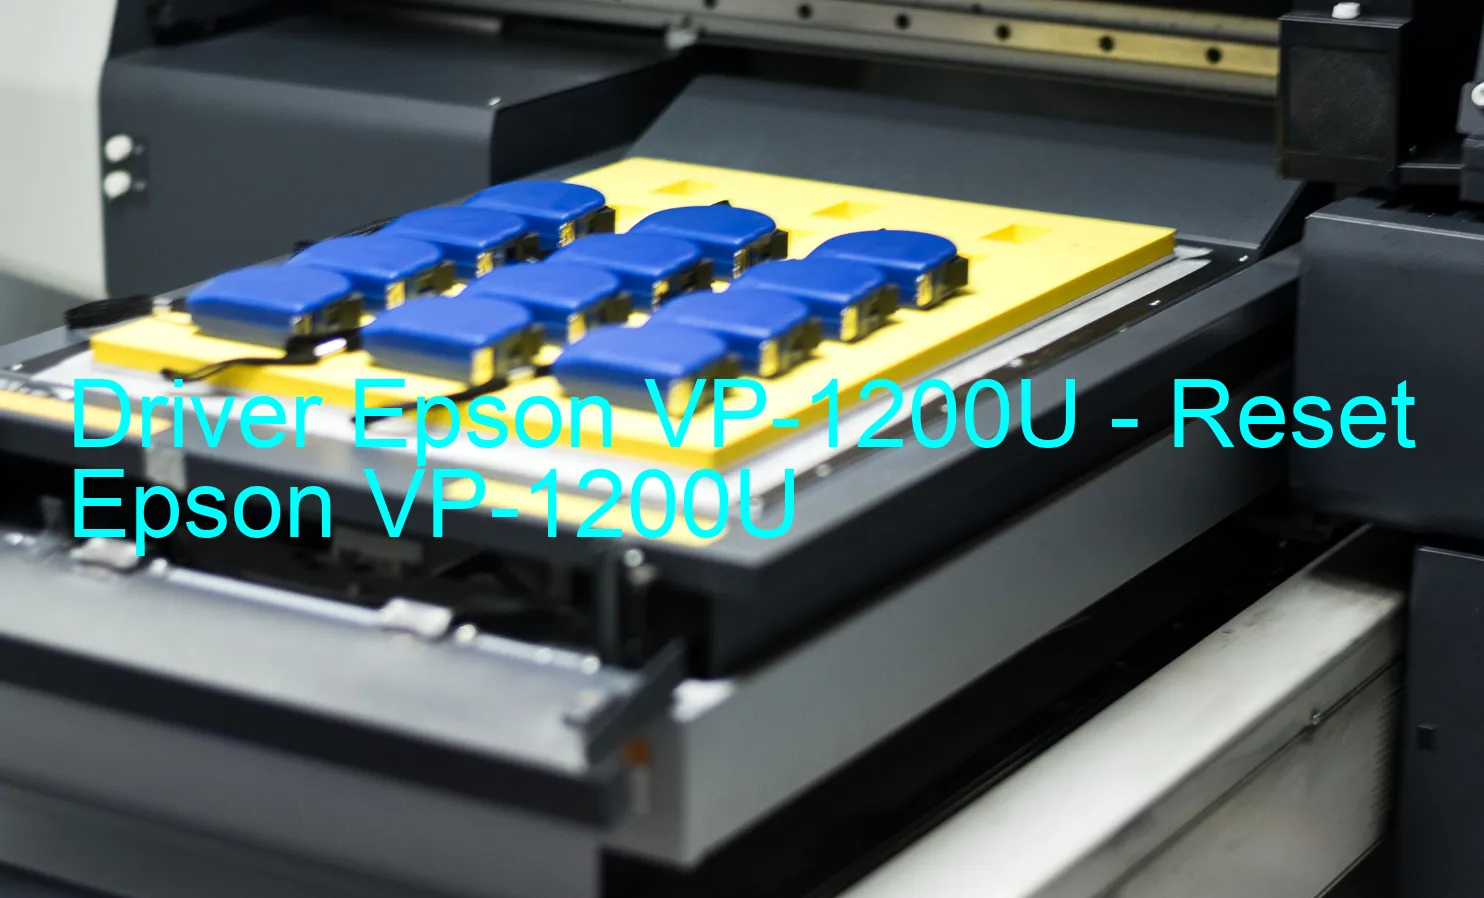 Epson VP-1200Uのドライバー、Epson VP-1200Uのリセットソフトウェア